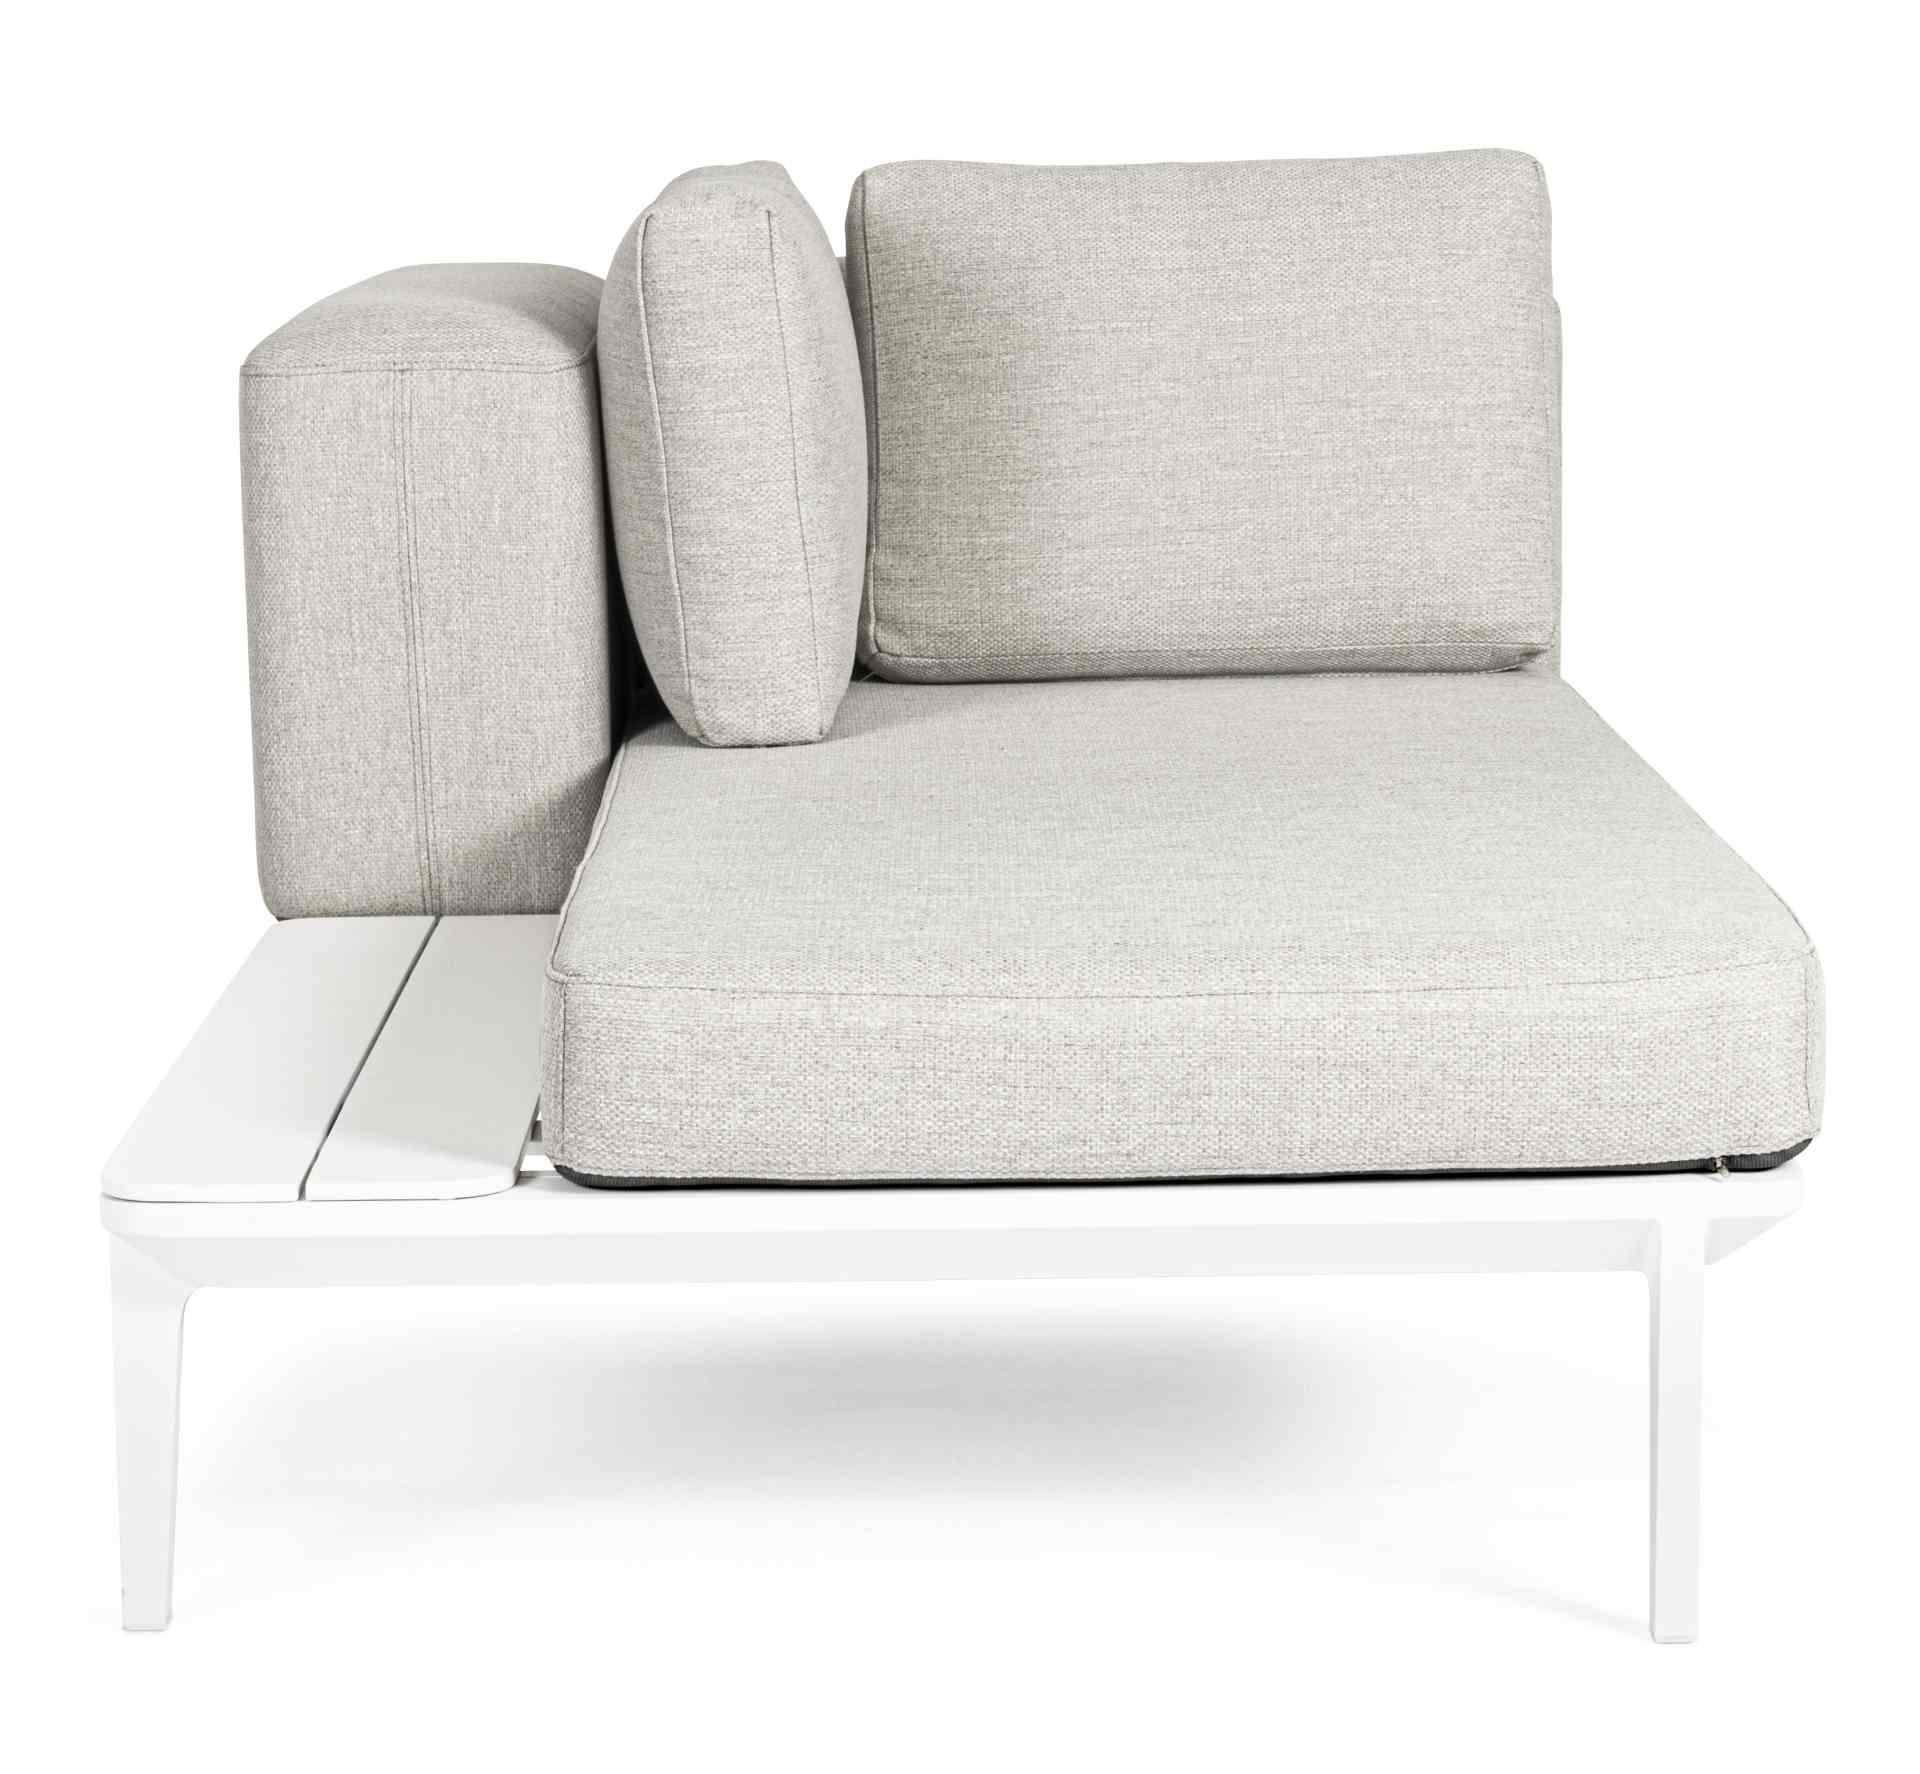 Das Gartensofa Matrix überzeugt mit seinem modernen Design. Gefertigt wurde es aus Olefin-Stoff, welcher einen grauen Farbton besitzt. Das Gestell ist aus Aluminium und hat eine weiße Farbe. Das Sofa verfügt über eine Sitzhöhe von 40 cm und ist für den Ou